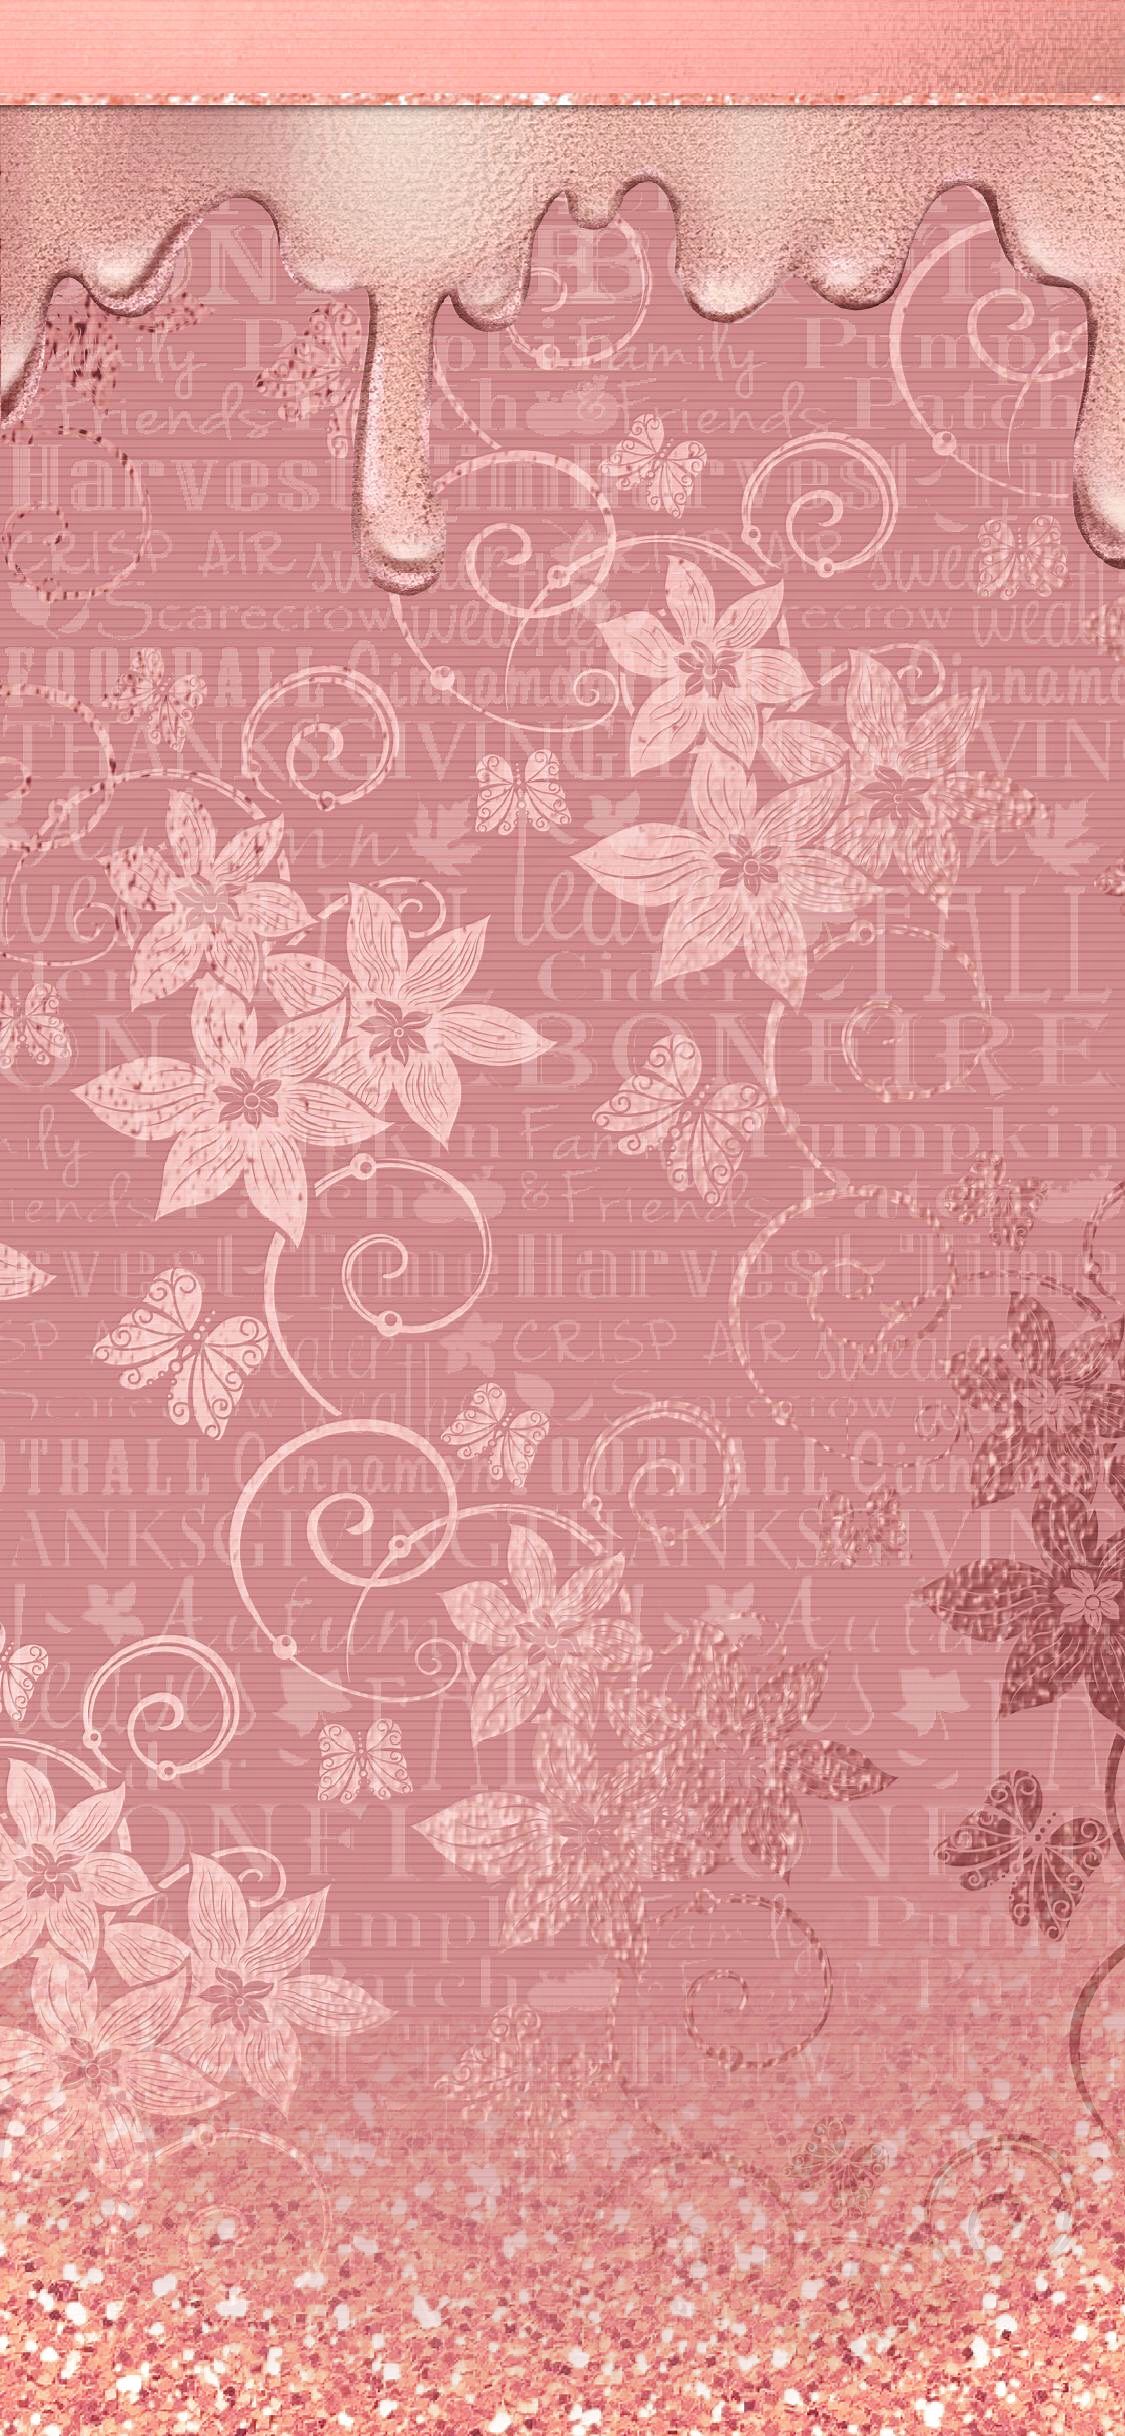 Autumn Air (Wallpaper). ❣ ReeseyBelle ❣. Ipod wallpaper, Wallpaper, iPhone wallpaper